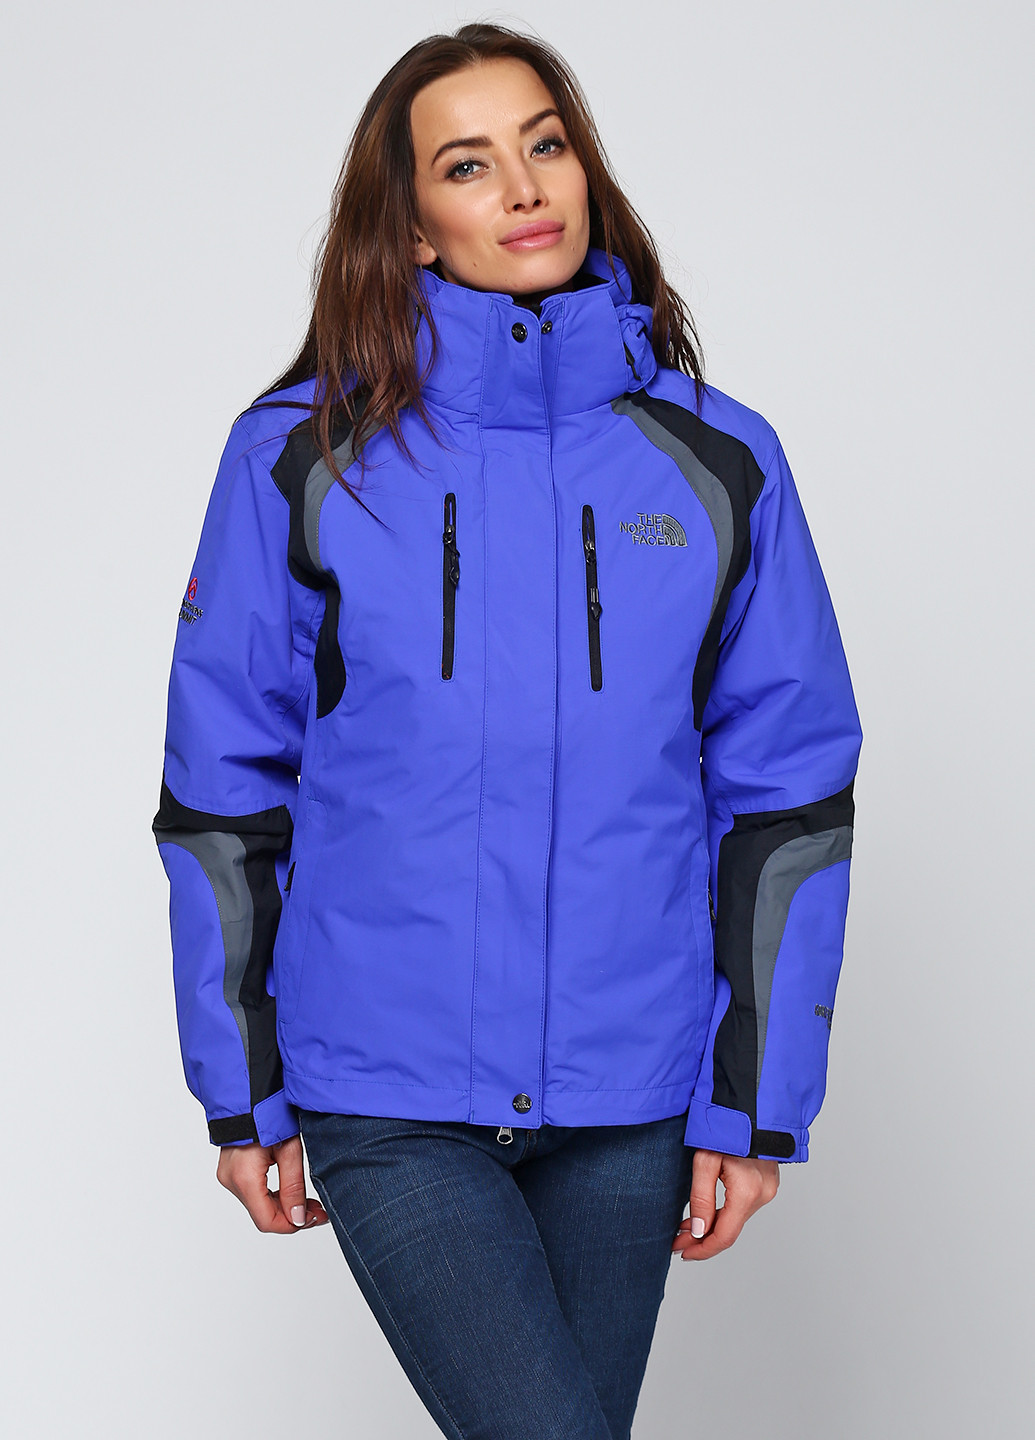 Фиолетовая зимняя куртка лыжная The North Face